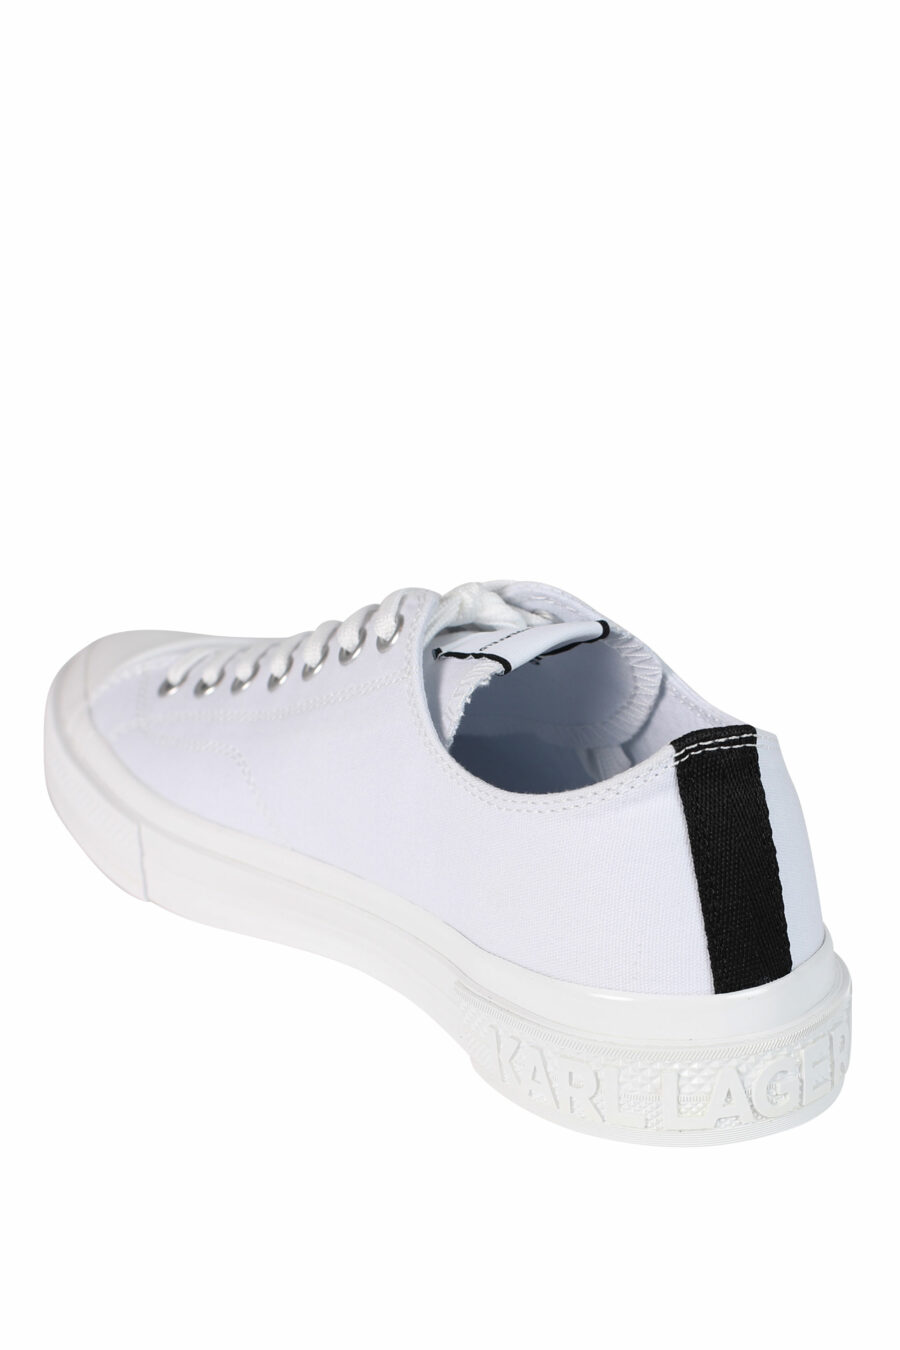 Zapatillas blancas con logo "karl" y suela blanca - 5059529249747 4